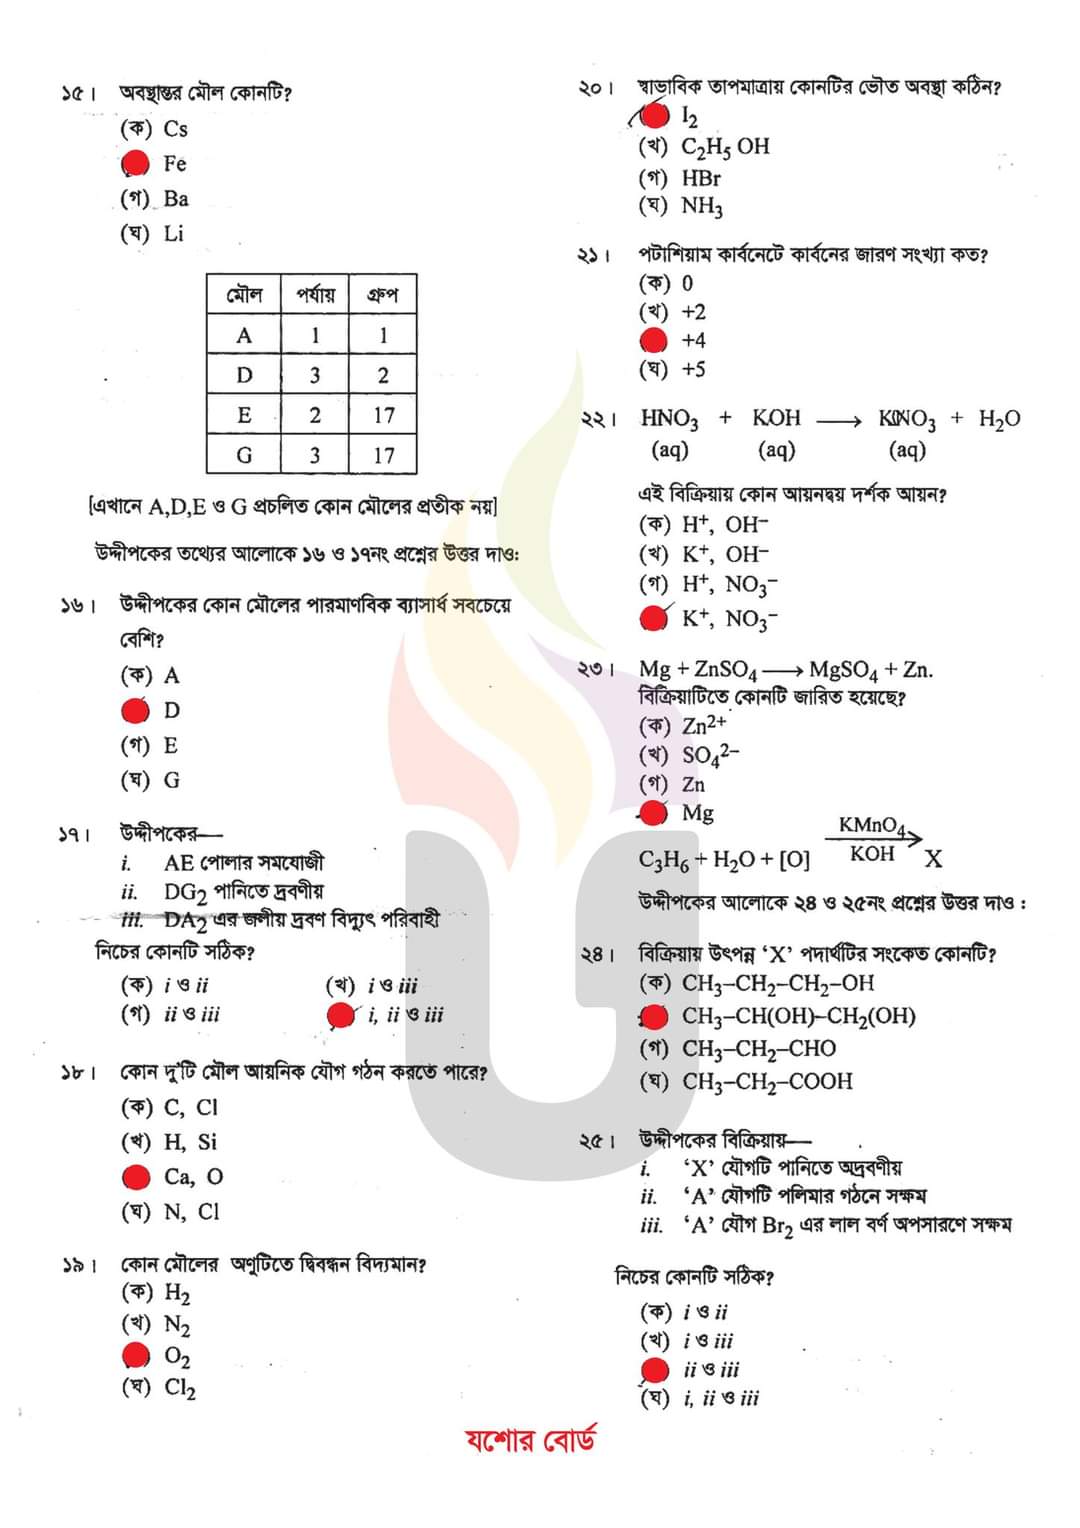 এসএসসি রসায়ন  প্রশ্ন ও উত্তর ২০২৩ যশোর | SSC chemistry Jessore Board MCQ Question Answer 2023 | এসএসসি যশোর  রসায়ন  বহুনির্বাচনি (MCQ) উত্তরমালা সমাধান ২০২৩